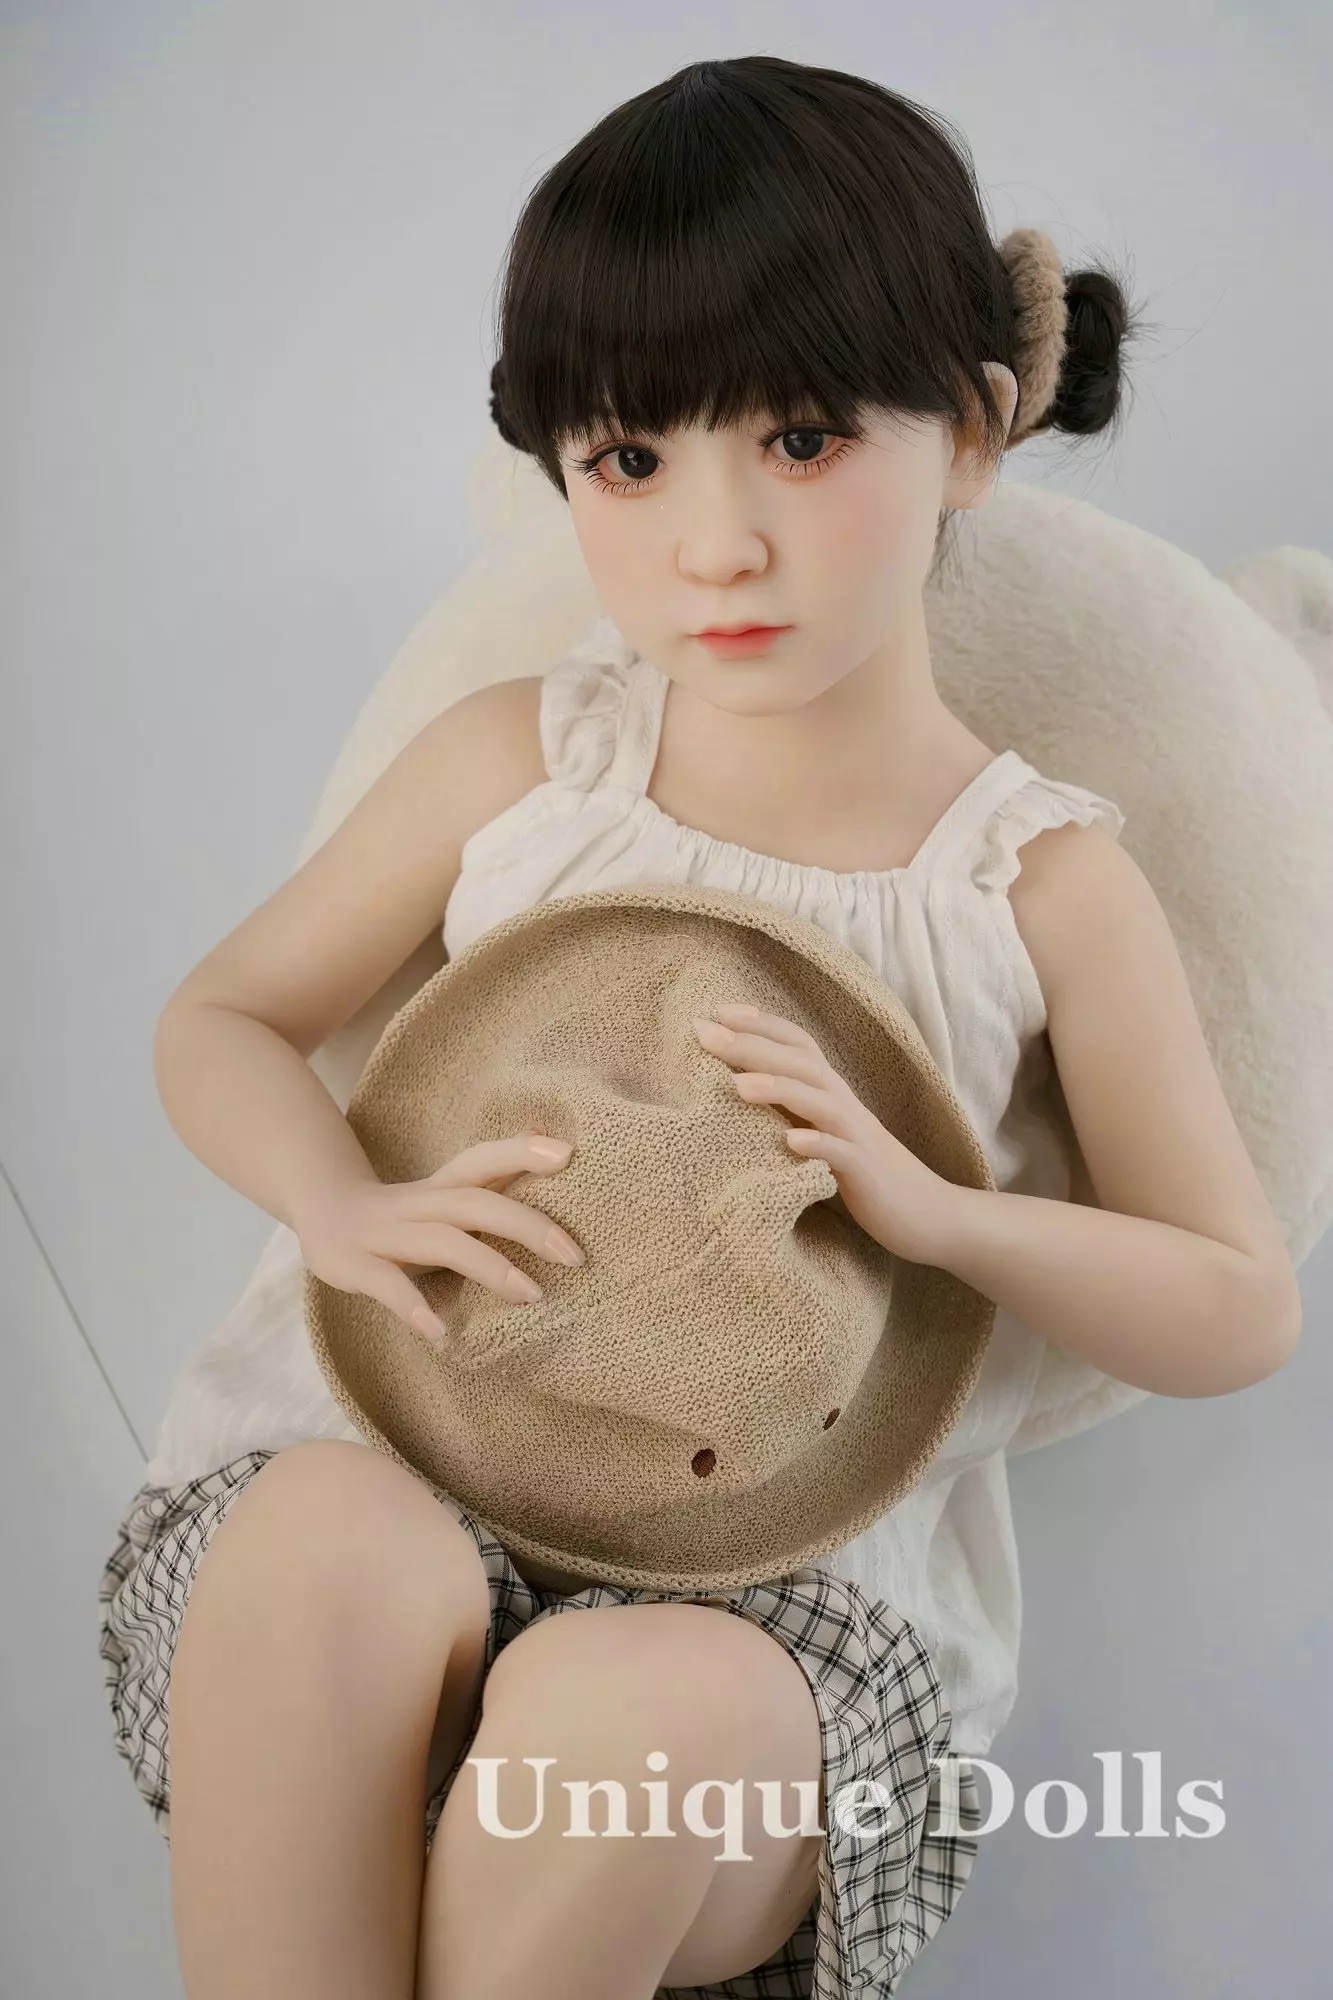 AXBDOLL 110cm TB47# TPE Mini Sex Doll Cute Love Dolls